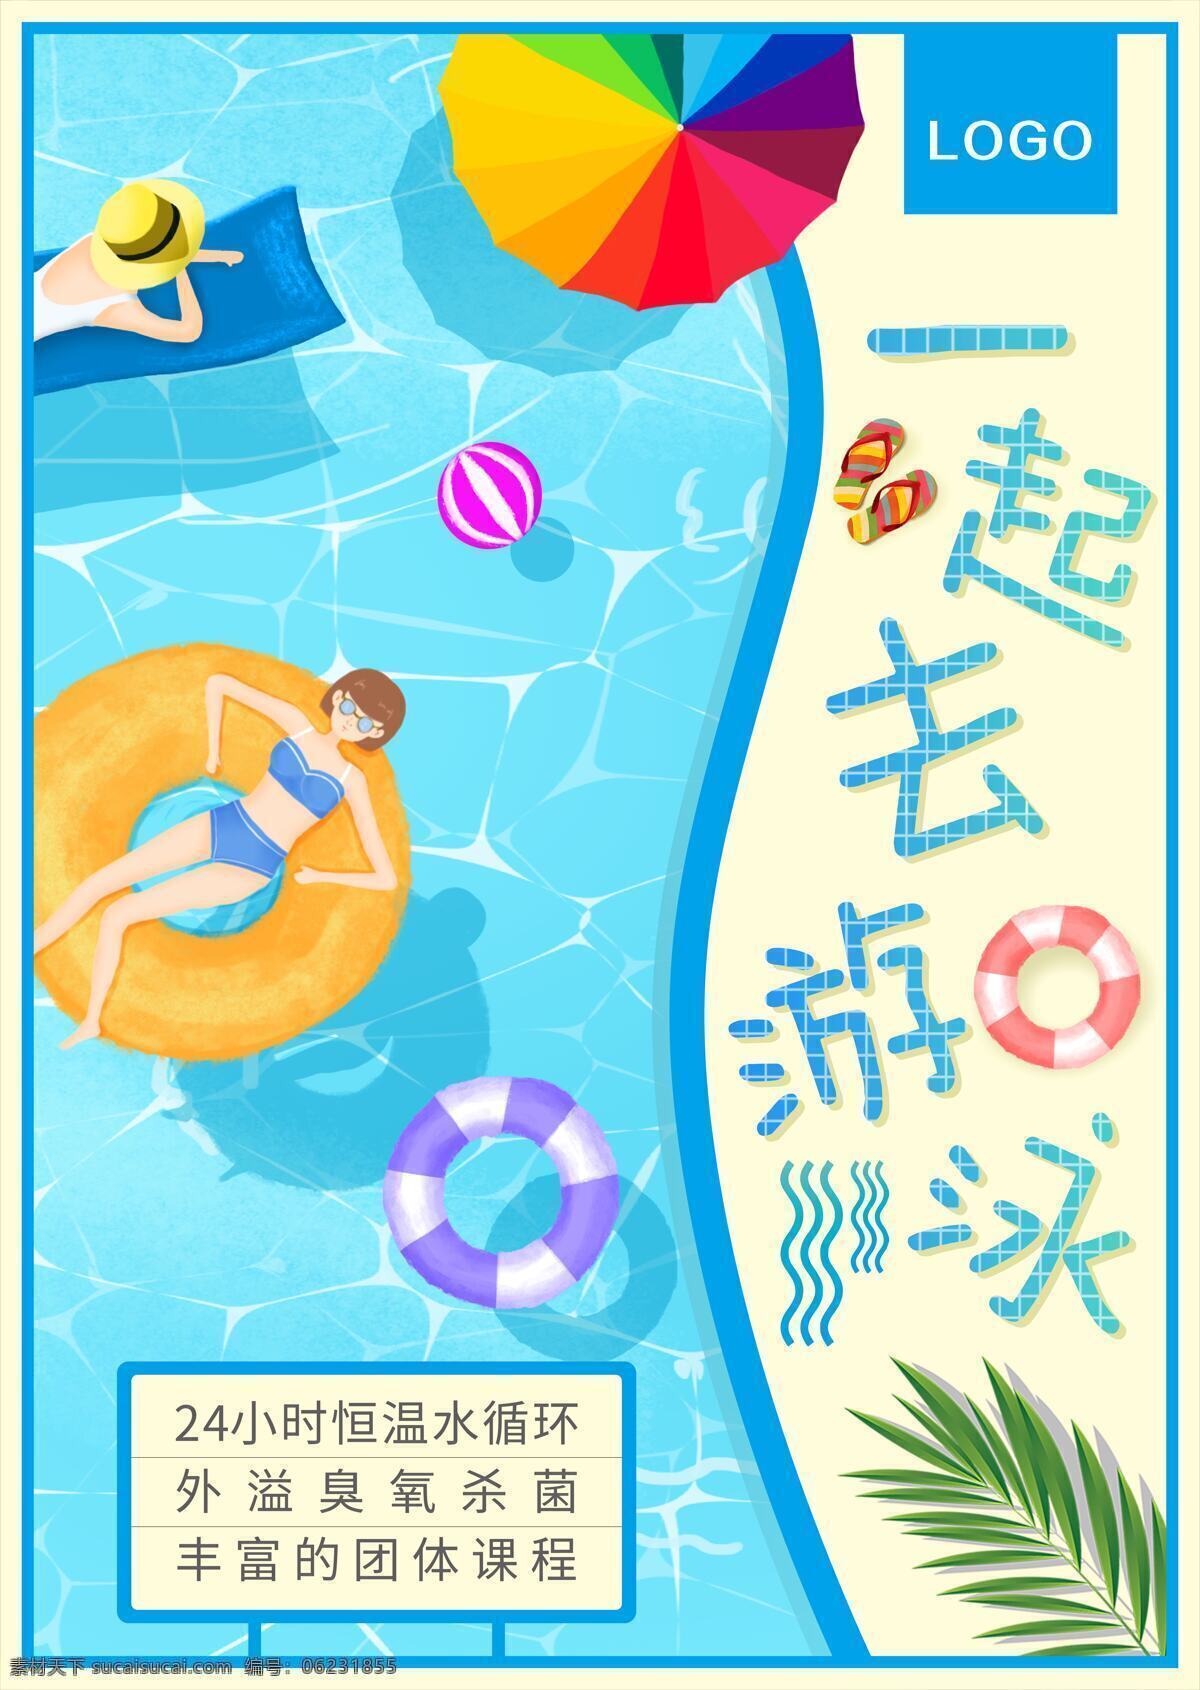 游泳馆 夏天 蓝色 宣传海报 清新 促销 沙滩 游泳圈 排球 太阳伞